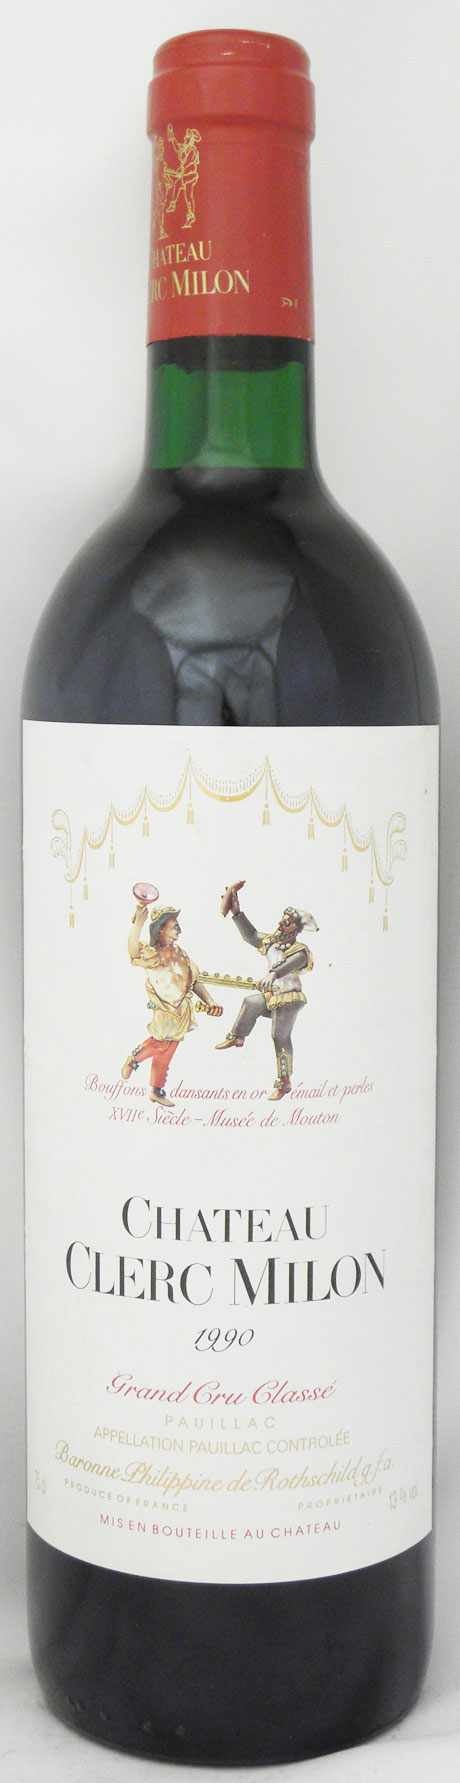 1990年 シャトー クレール ミロン CHATEAU CLERC MILON の販売[ヴィンテージワイン専門店のNengou-wine.com]